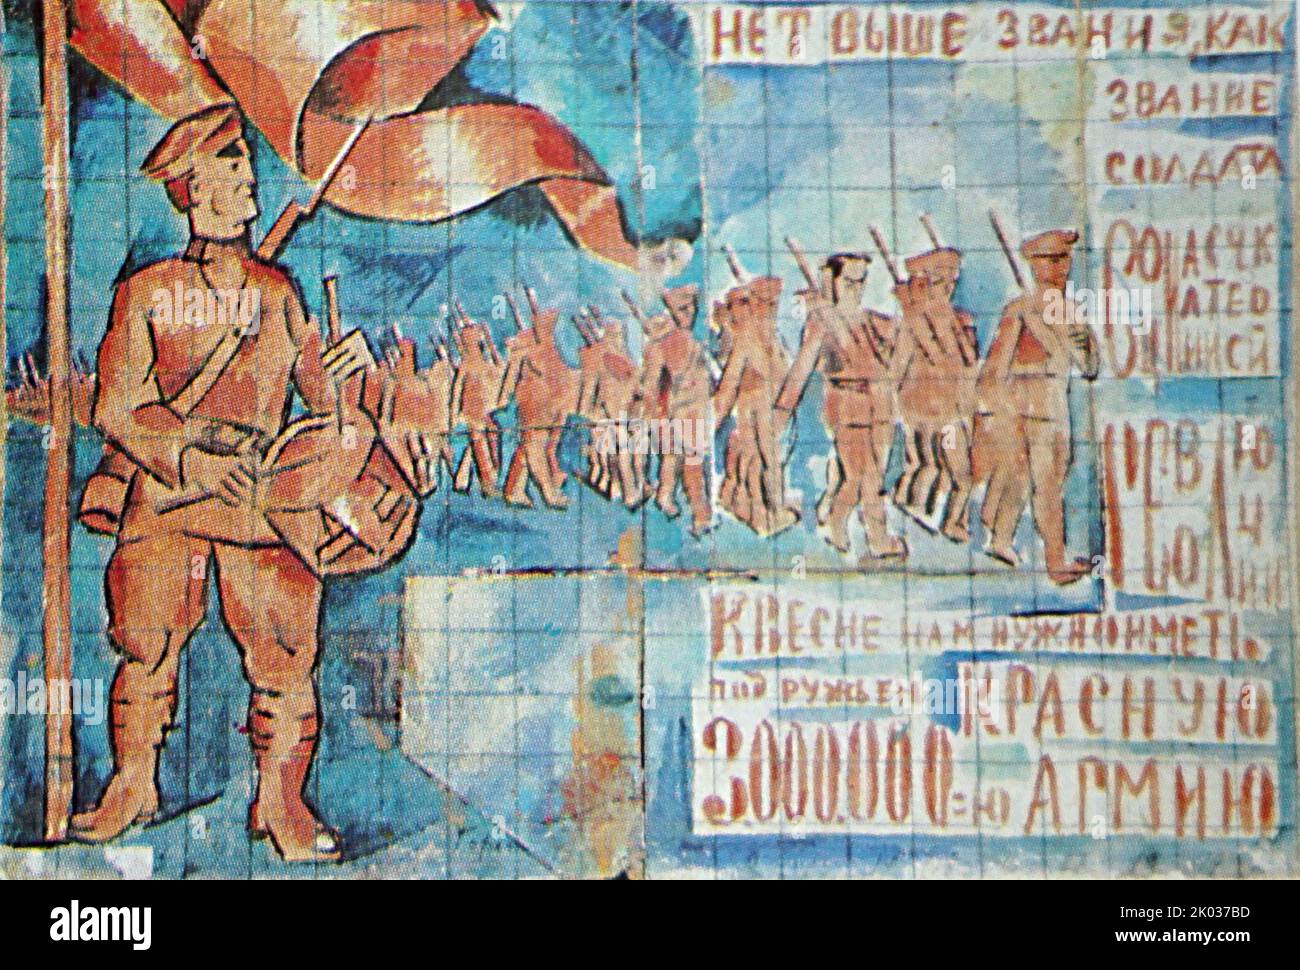 V. D. Baranov-Rossine. Skizze für das Panel "Es gibt keinen höheren Rang als den Rang eines Soldaten der sozialistischen Revolution. Sowjetische russische Propagandakunst Stockfoto